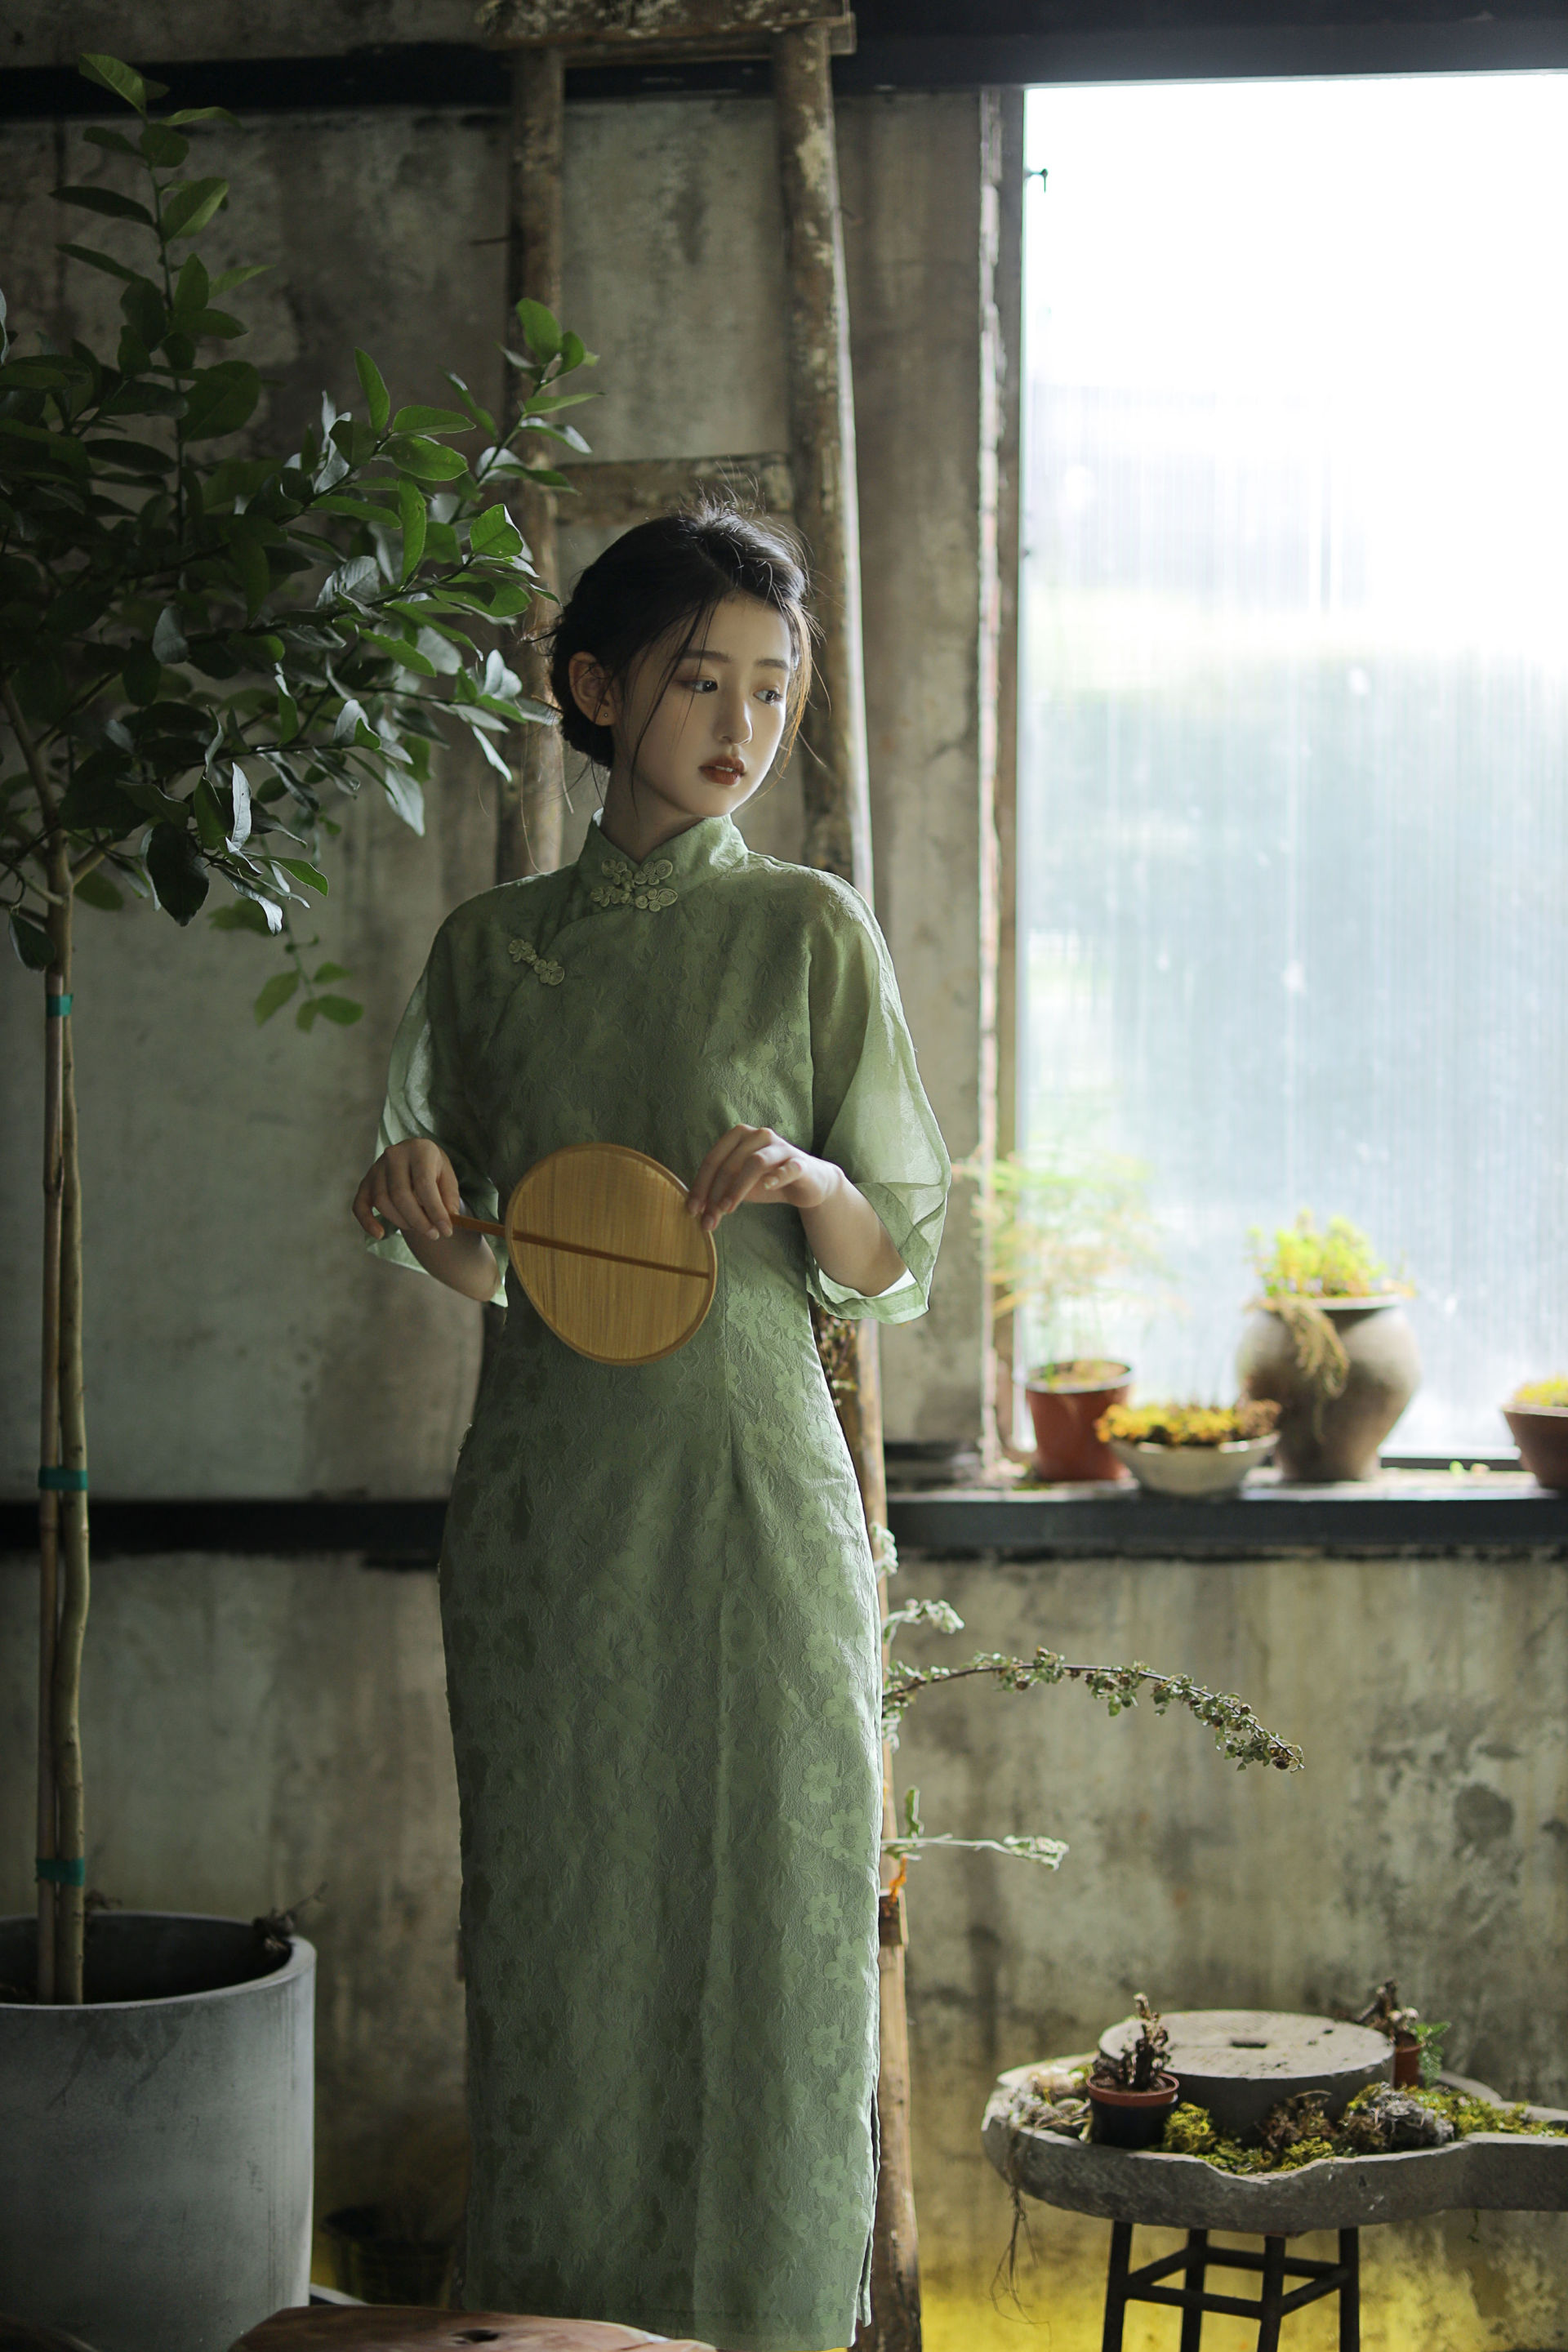 青韵 旗袍 模特 美图 摄影 唯美 古典 中国风 清冷